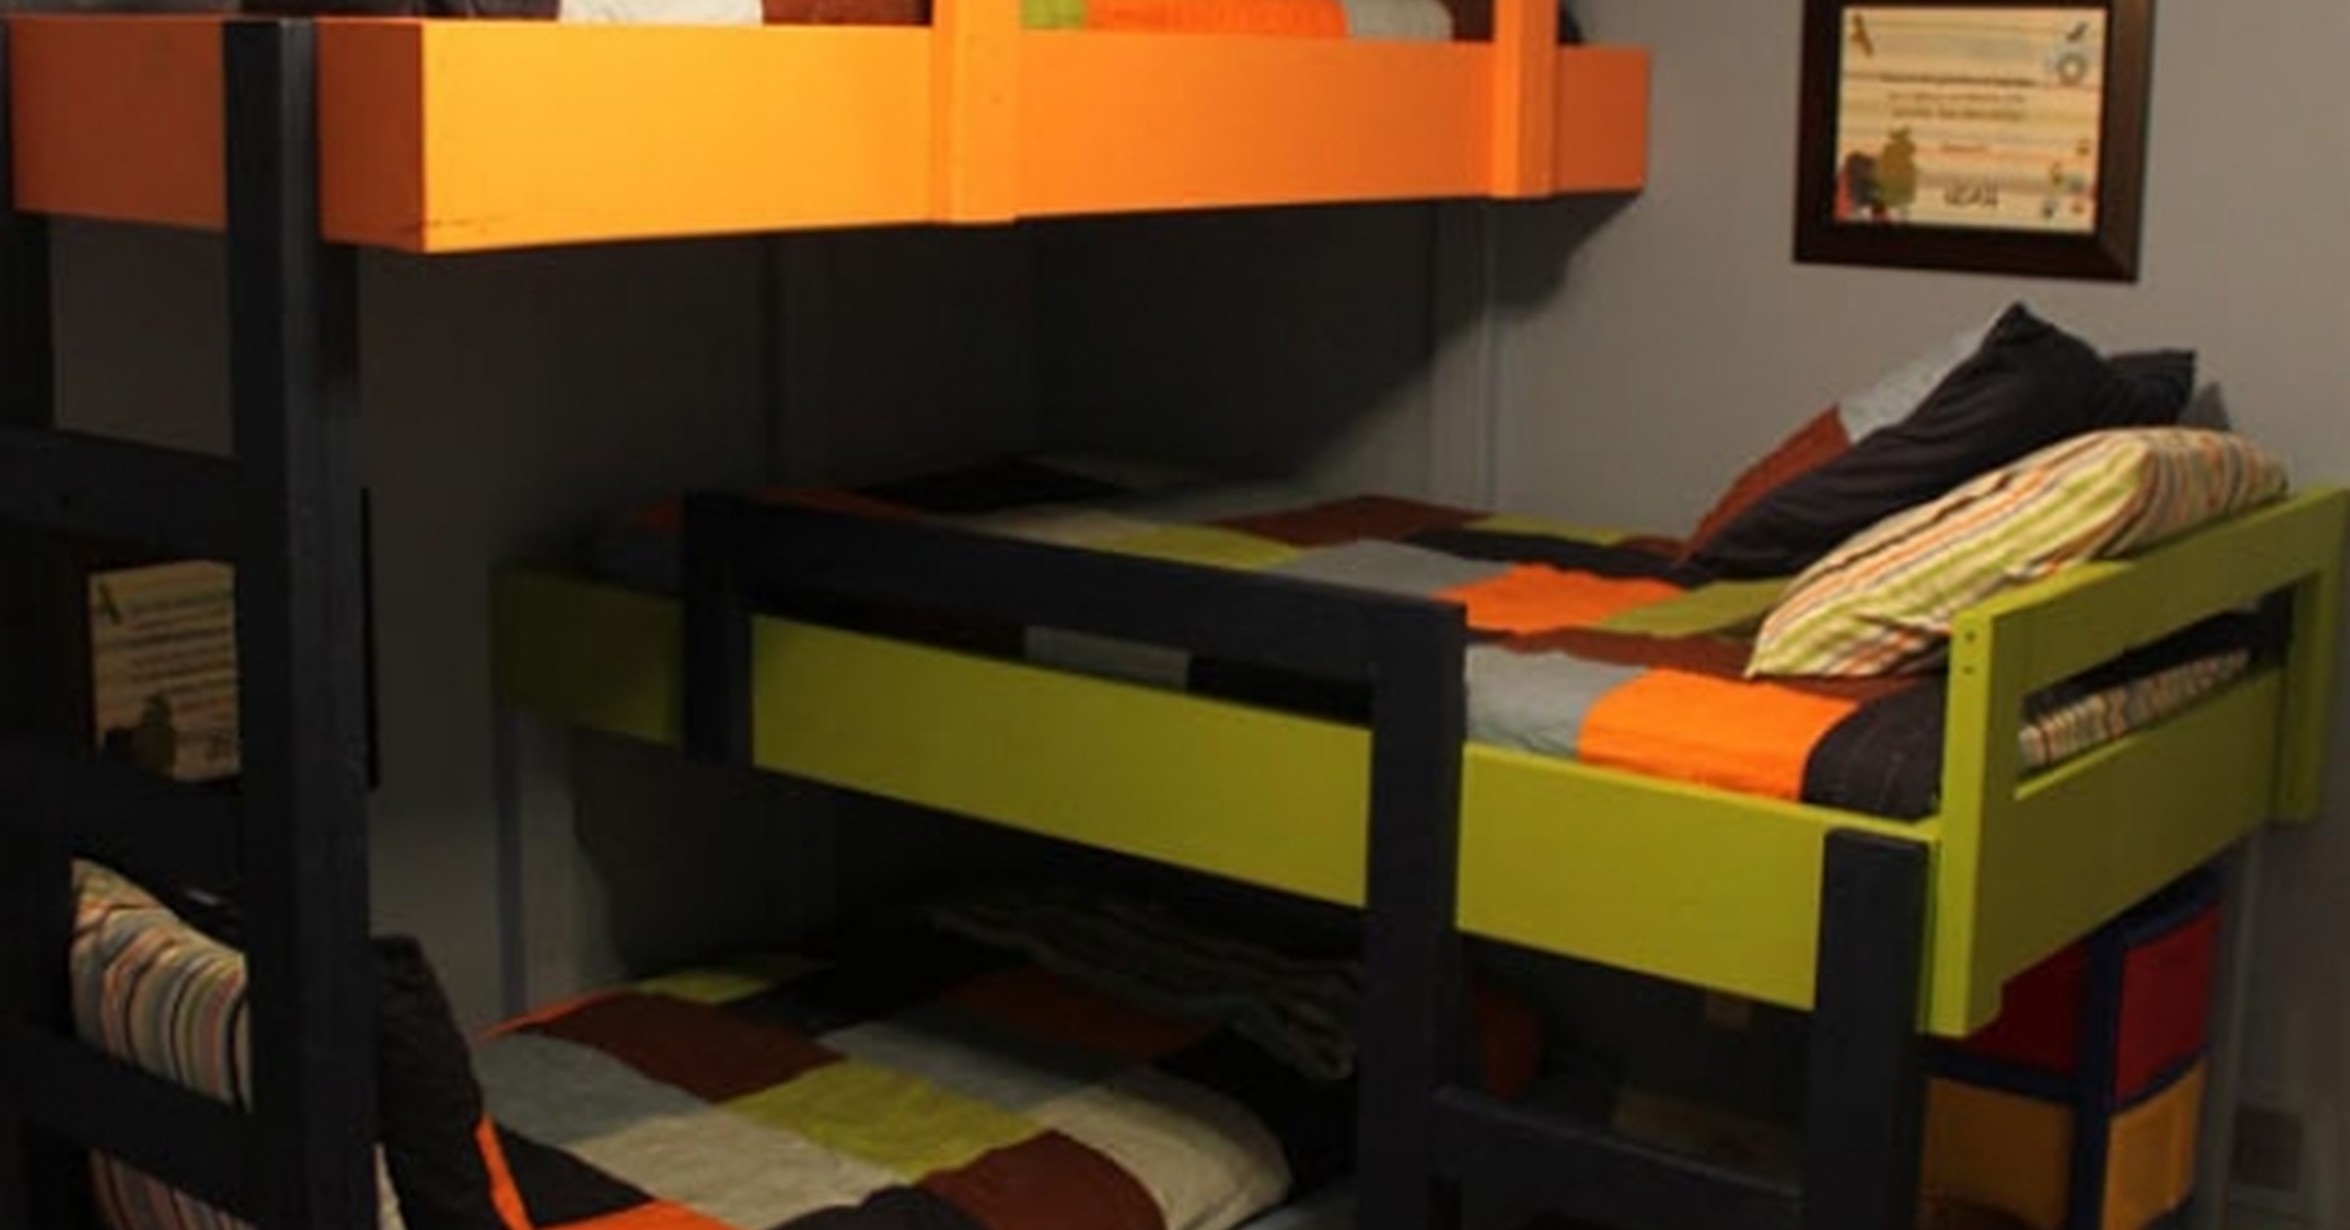 Двухъярусная кровать для детей